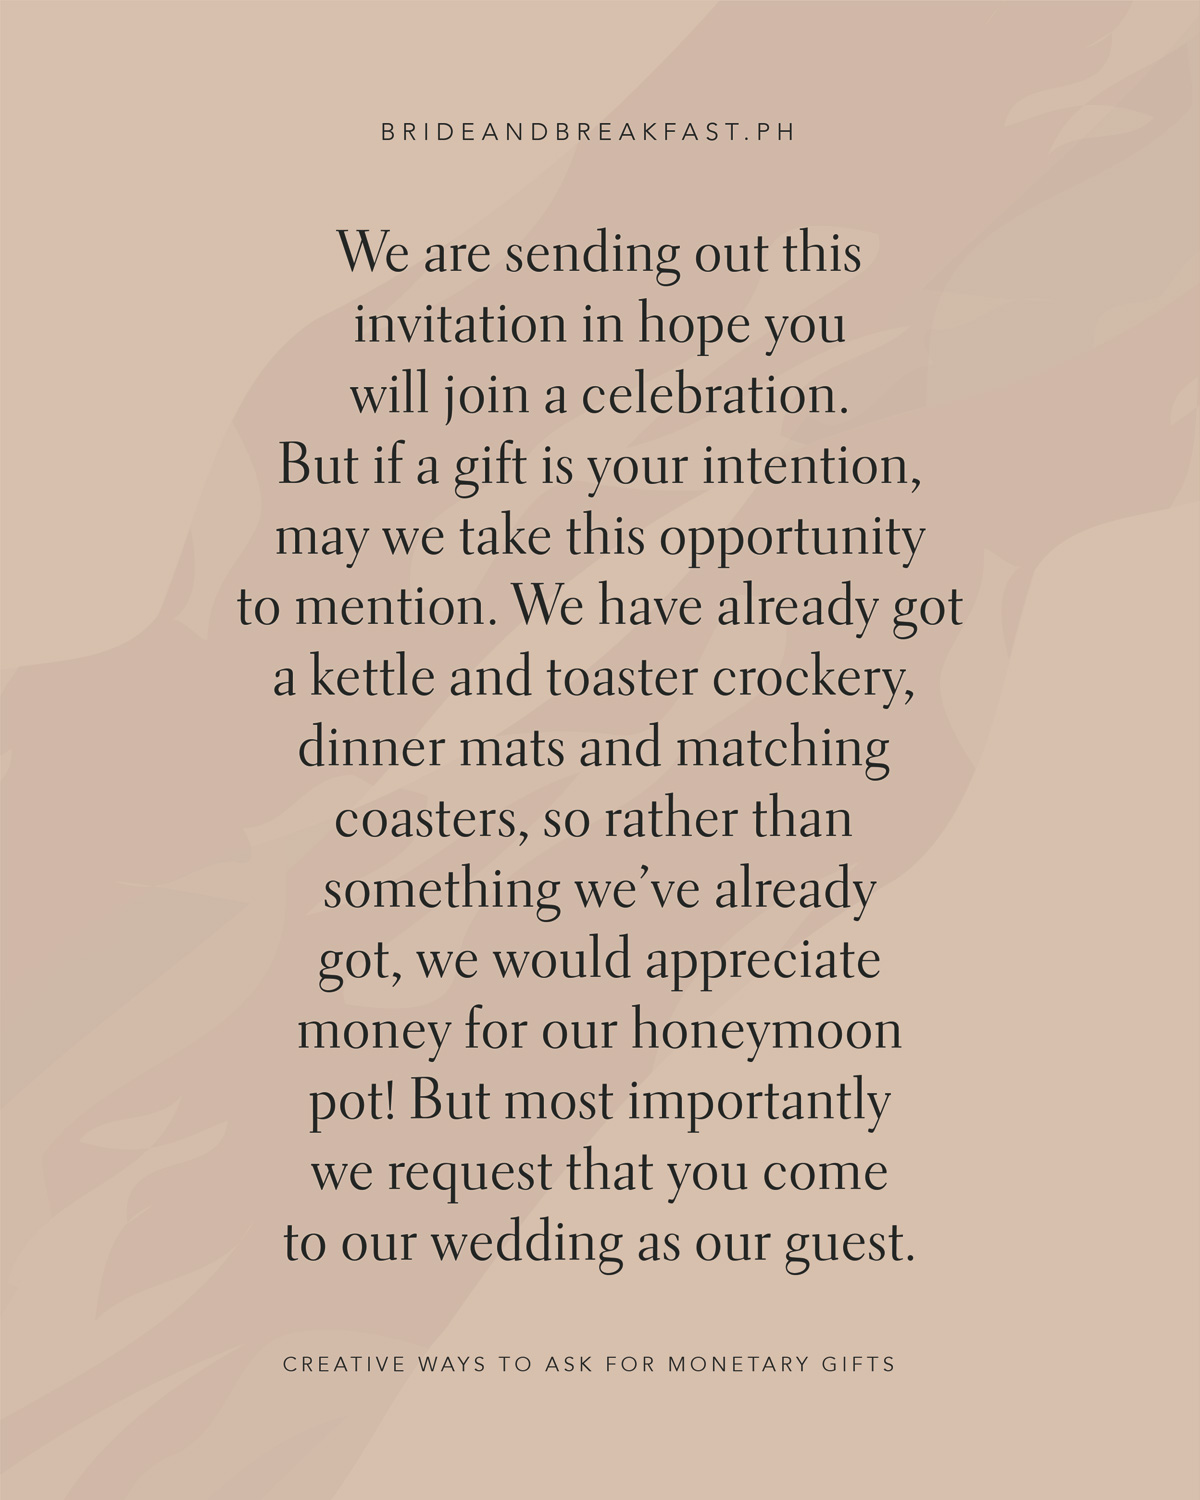  Wir versenden diese Einladung in der Hoffnung, dass Sie an einer Feier teilnehmen werden, aber wenn ein Geschenk Ihre Absicht ist, dürfen wir diese Gelegenheit nutzen, um zu erwähnen, dass wir bereits einen Wasserkocher und Toaster Geschirr, Tischsets und passende Untersetzer haben, anstatt etwas, das wir bereits haben Wir würden uns über Geld für unsere Flitterwochen freuen, aber vor allem bitten wir Sie, als unser Gast zu unserer Hochzeit zu kommen.